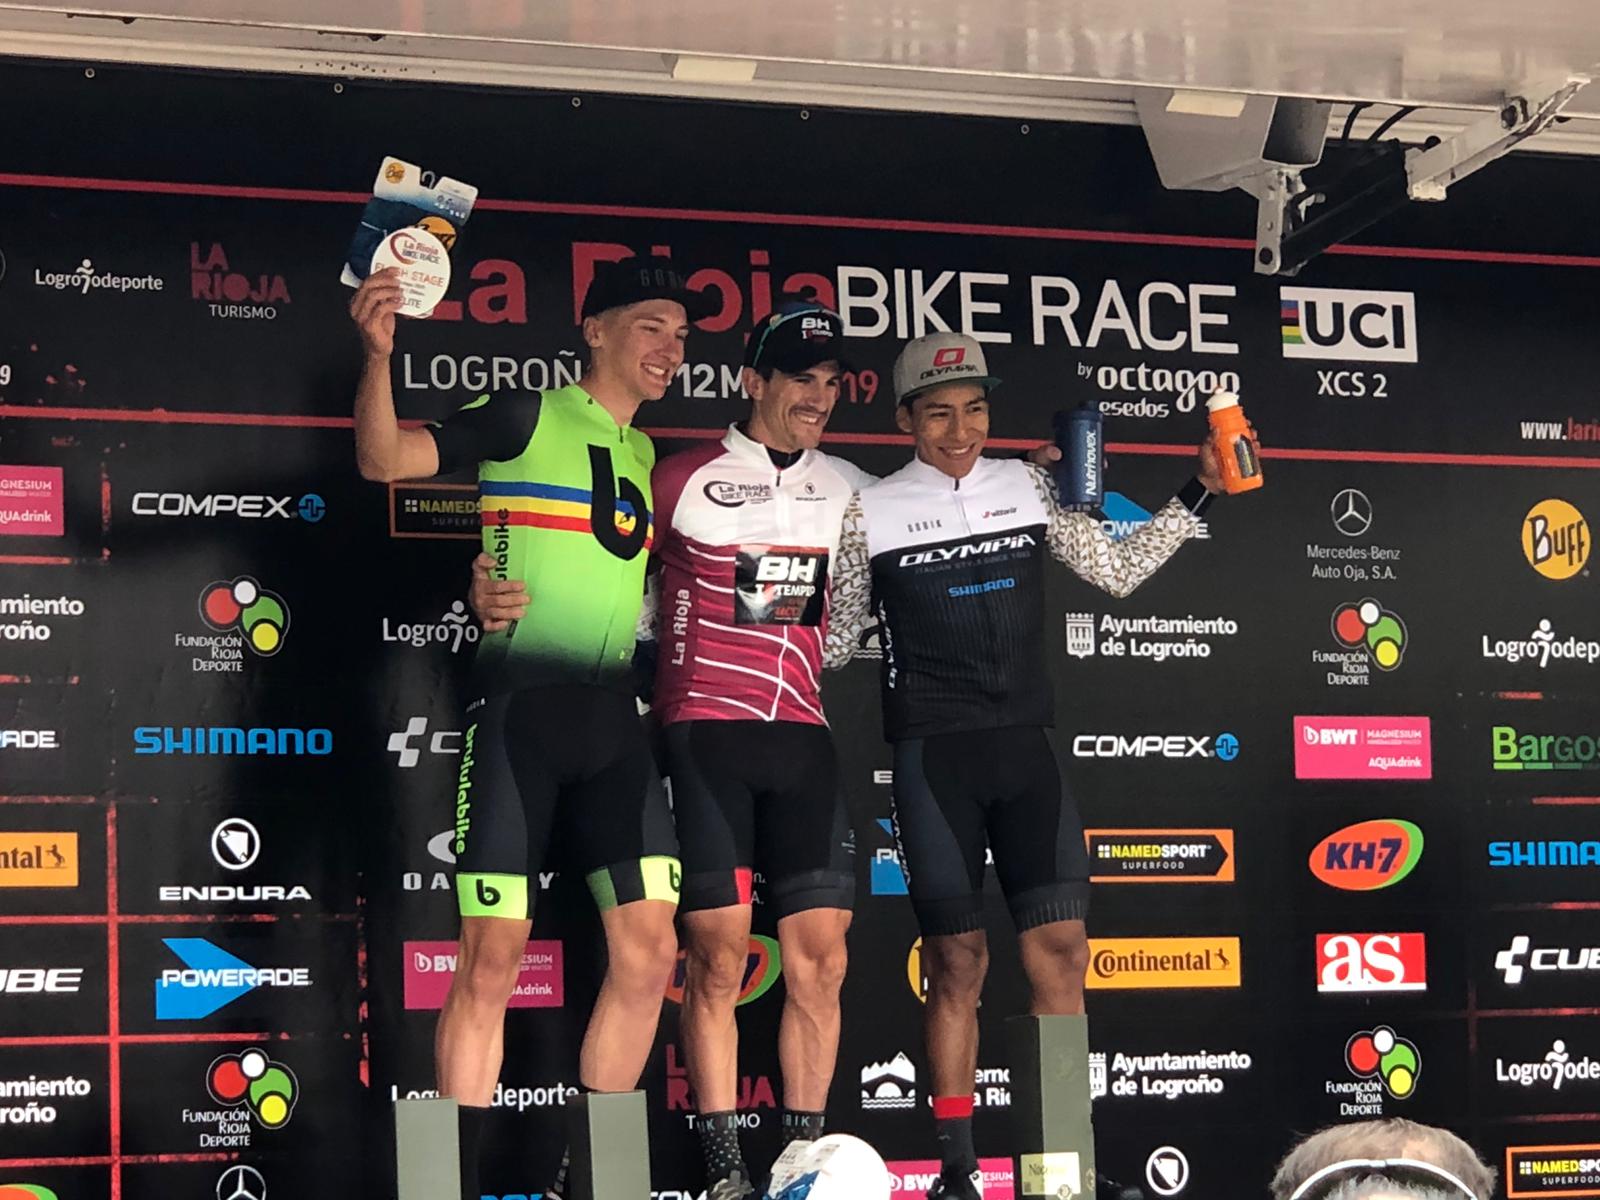 primer podium elite masculino rioja bike race 2019